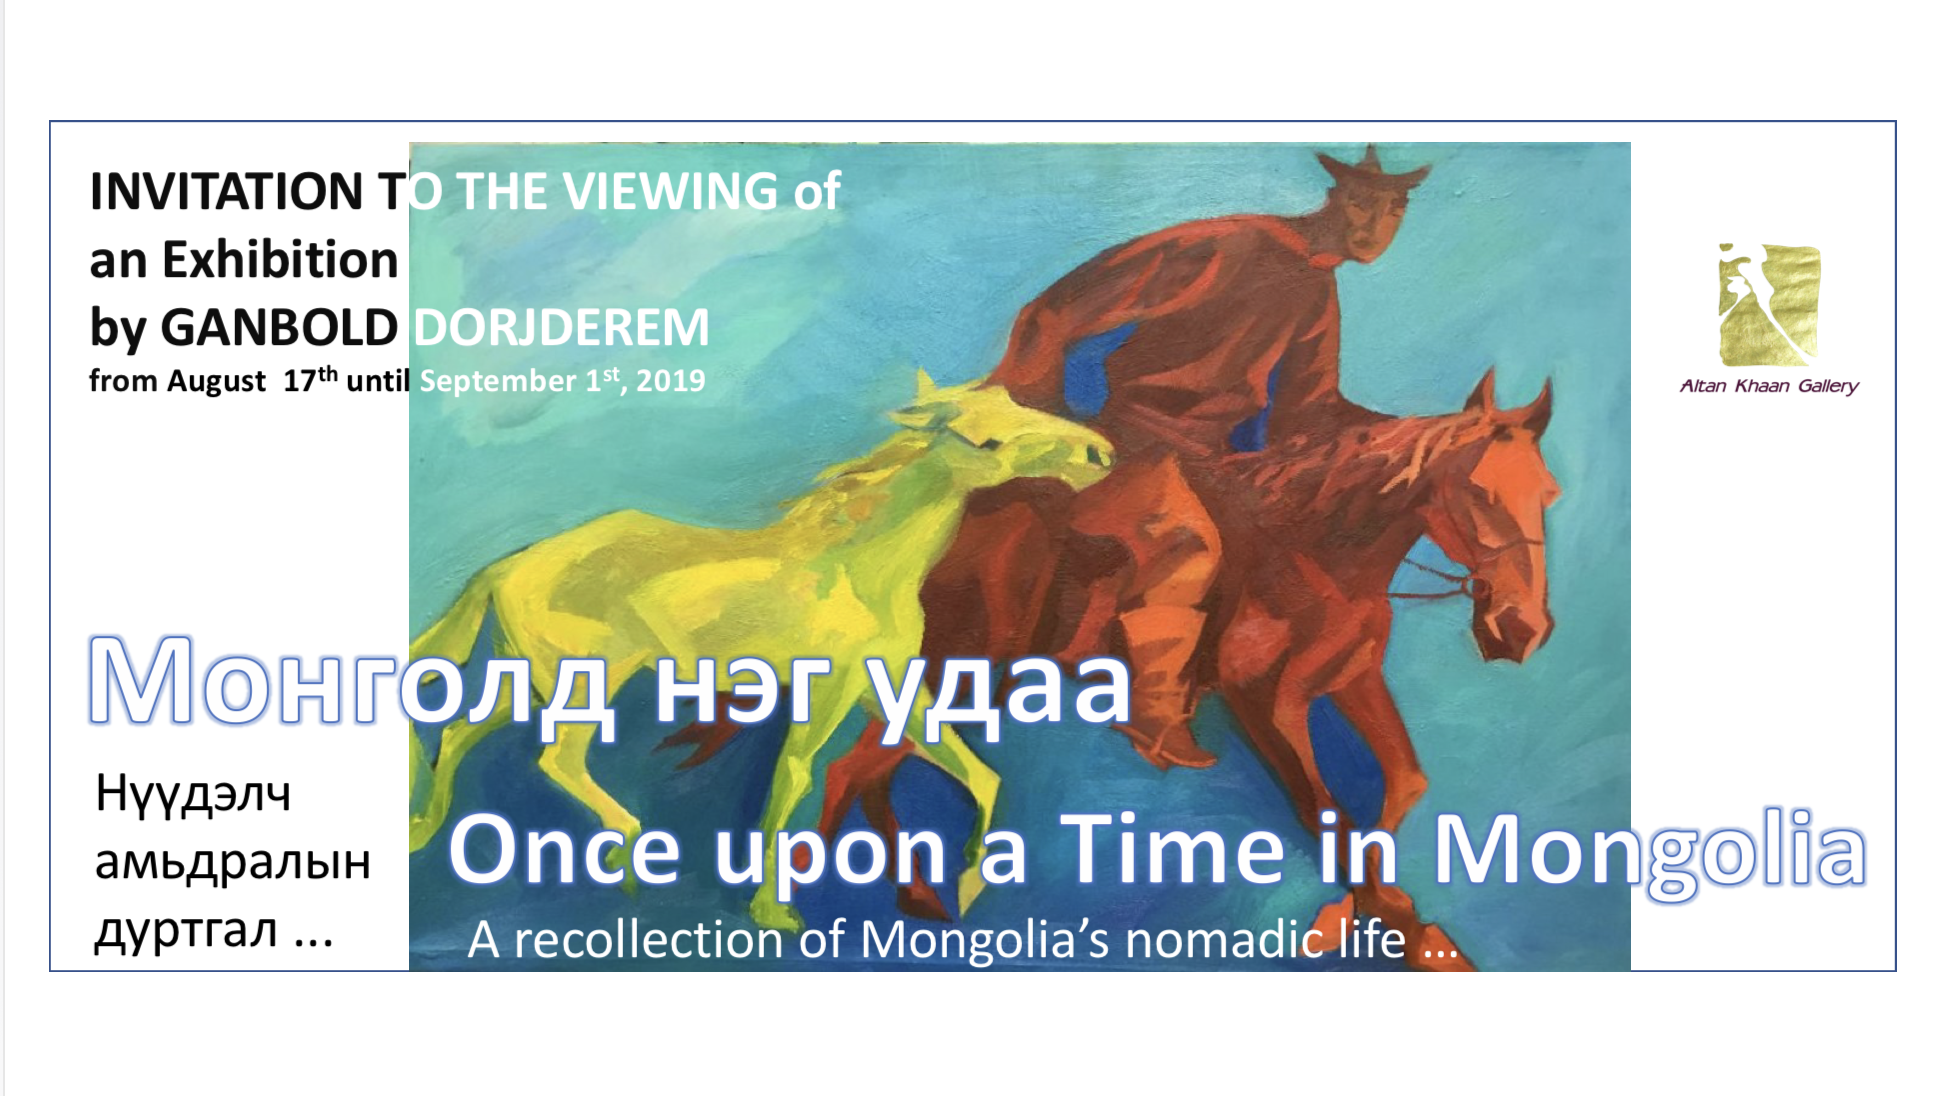 Journée d’inauguration d’Art Mongolia, photos de l’événement.